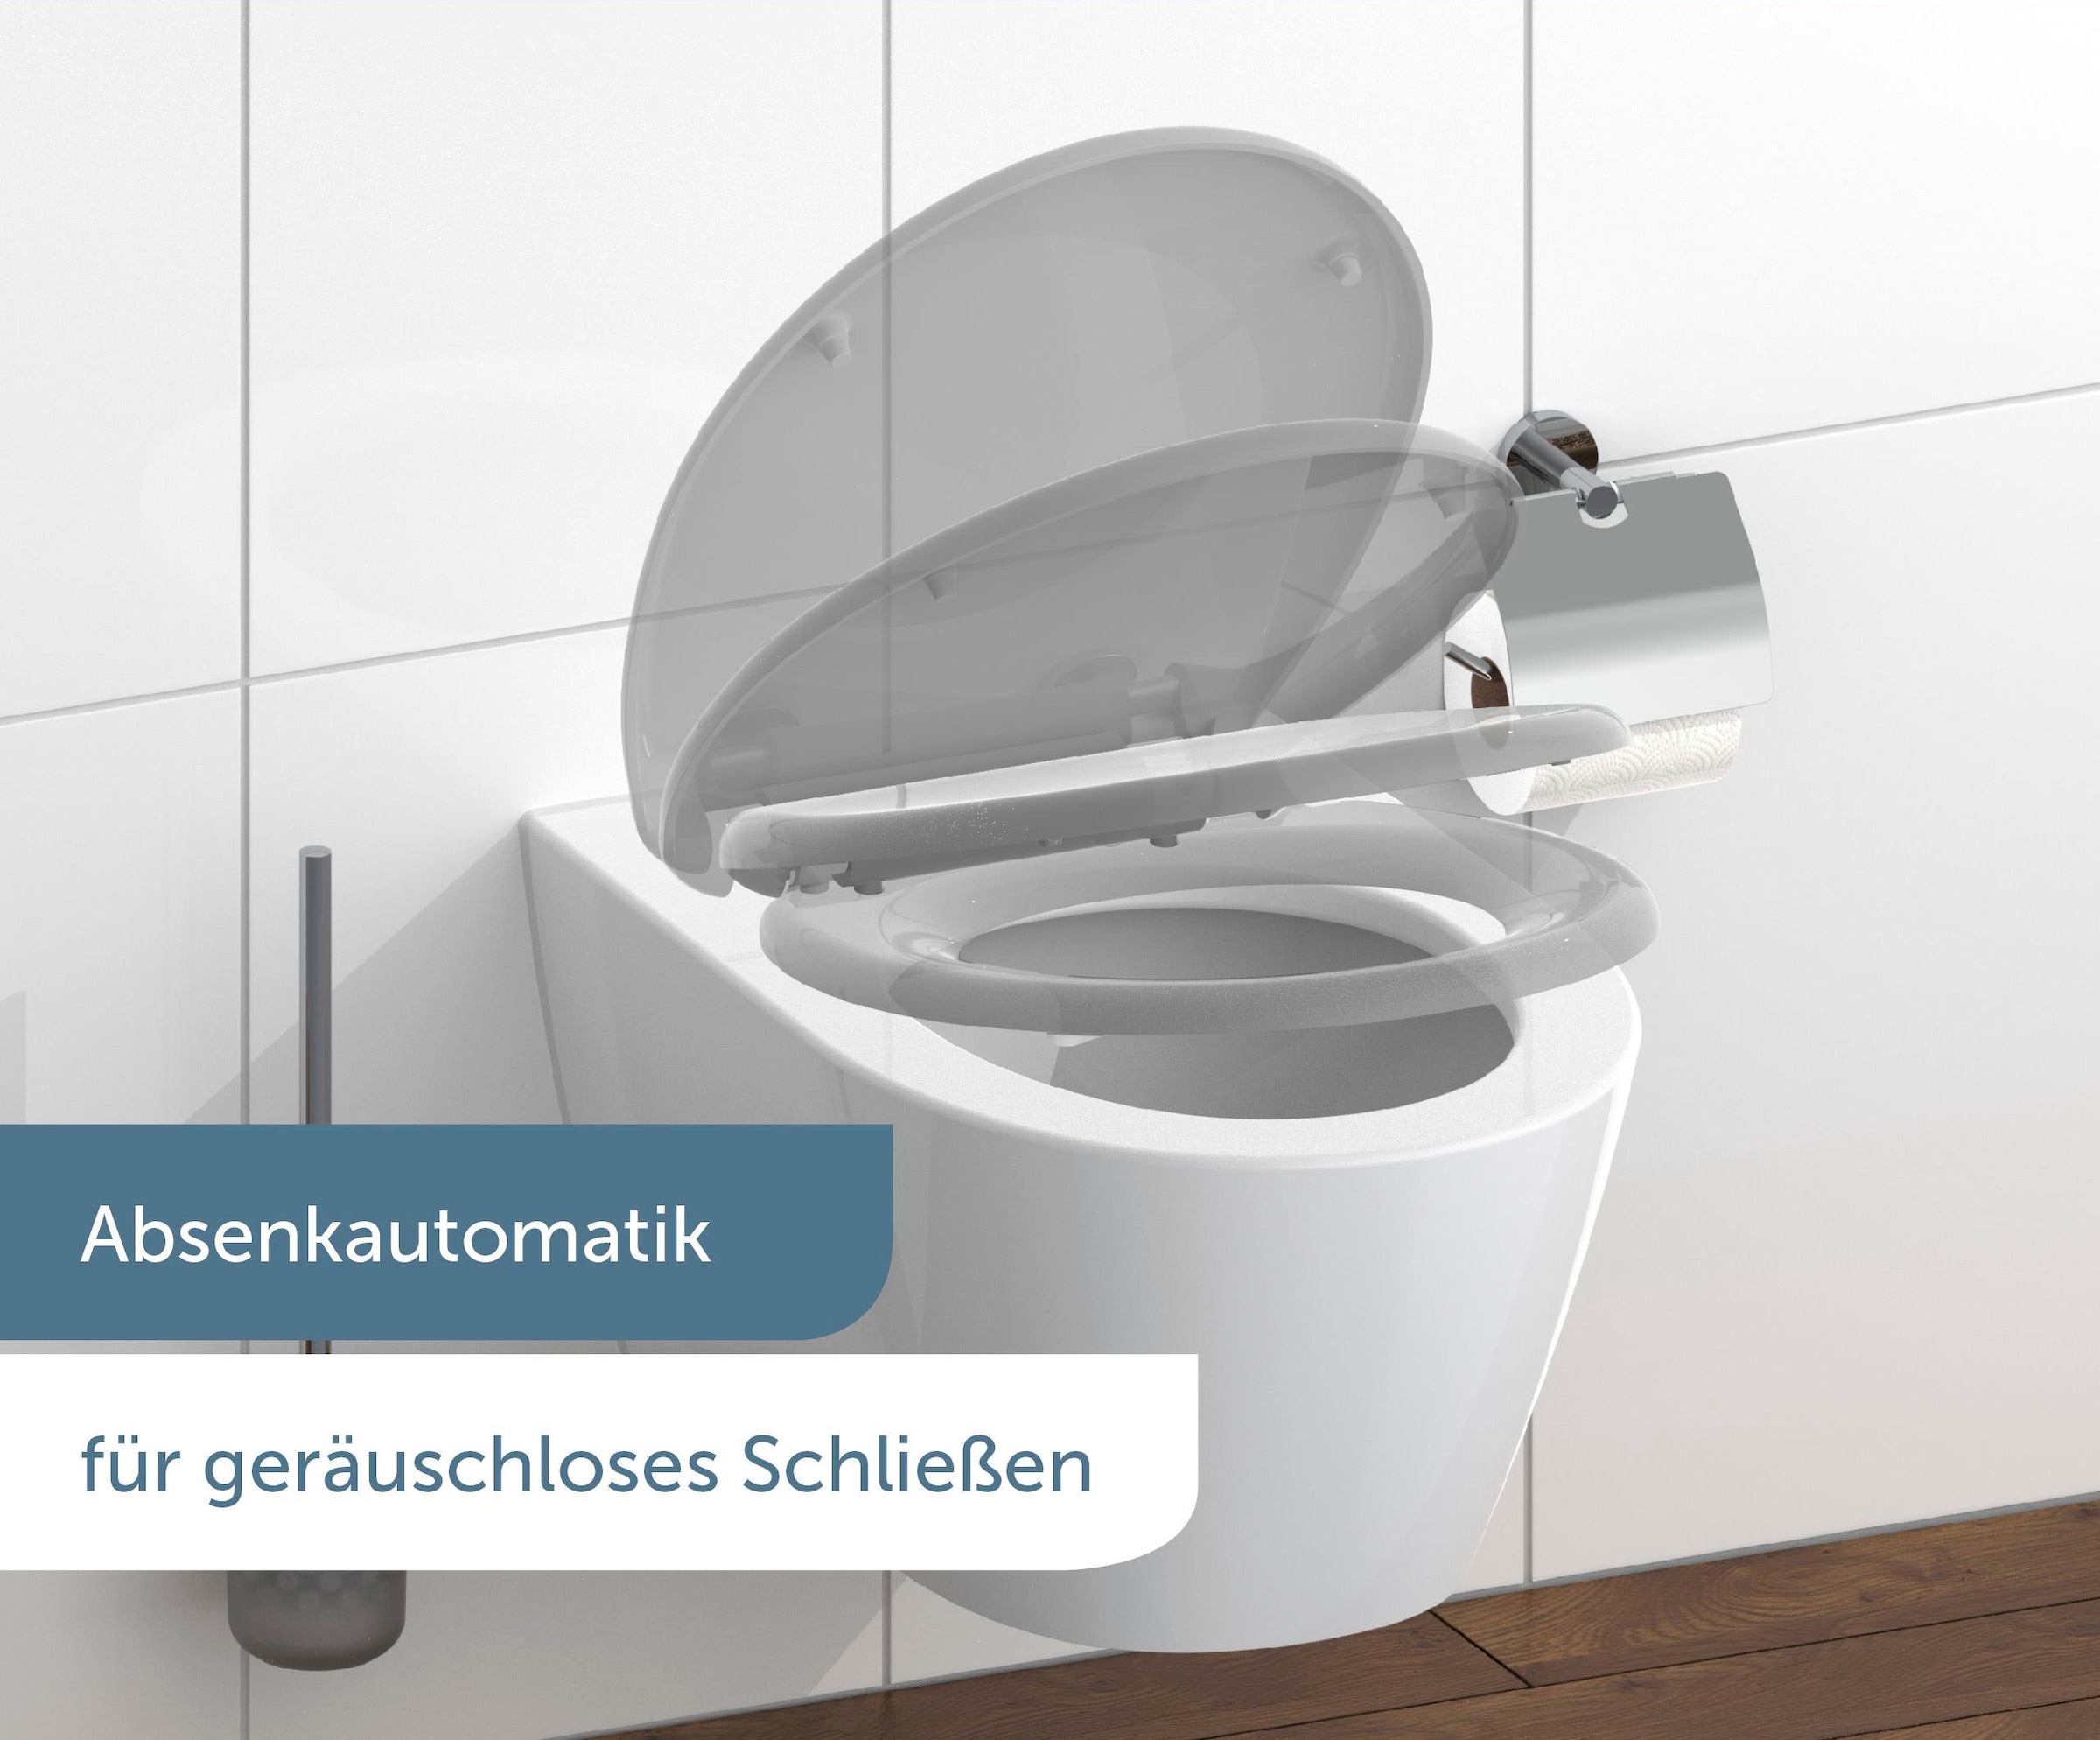 Schütte WC-Sitz, mit Absenkautomatik und Schnellverschlusstechnik